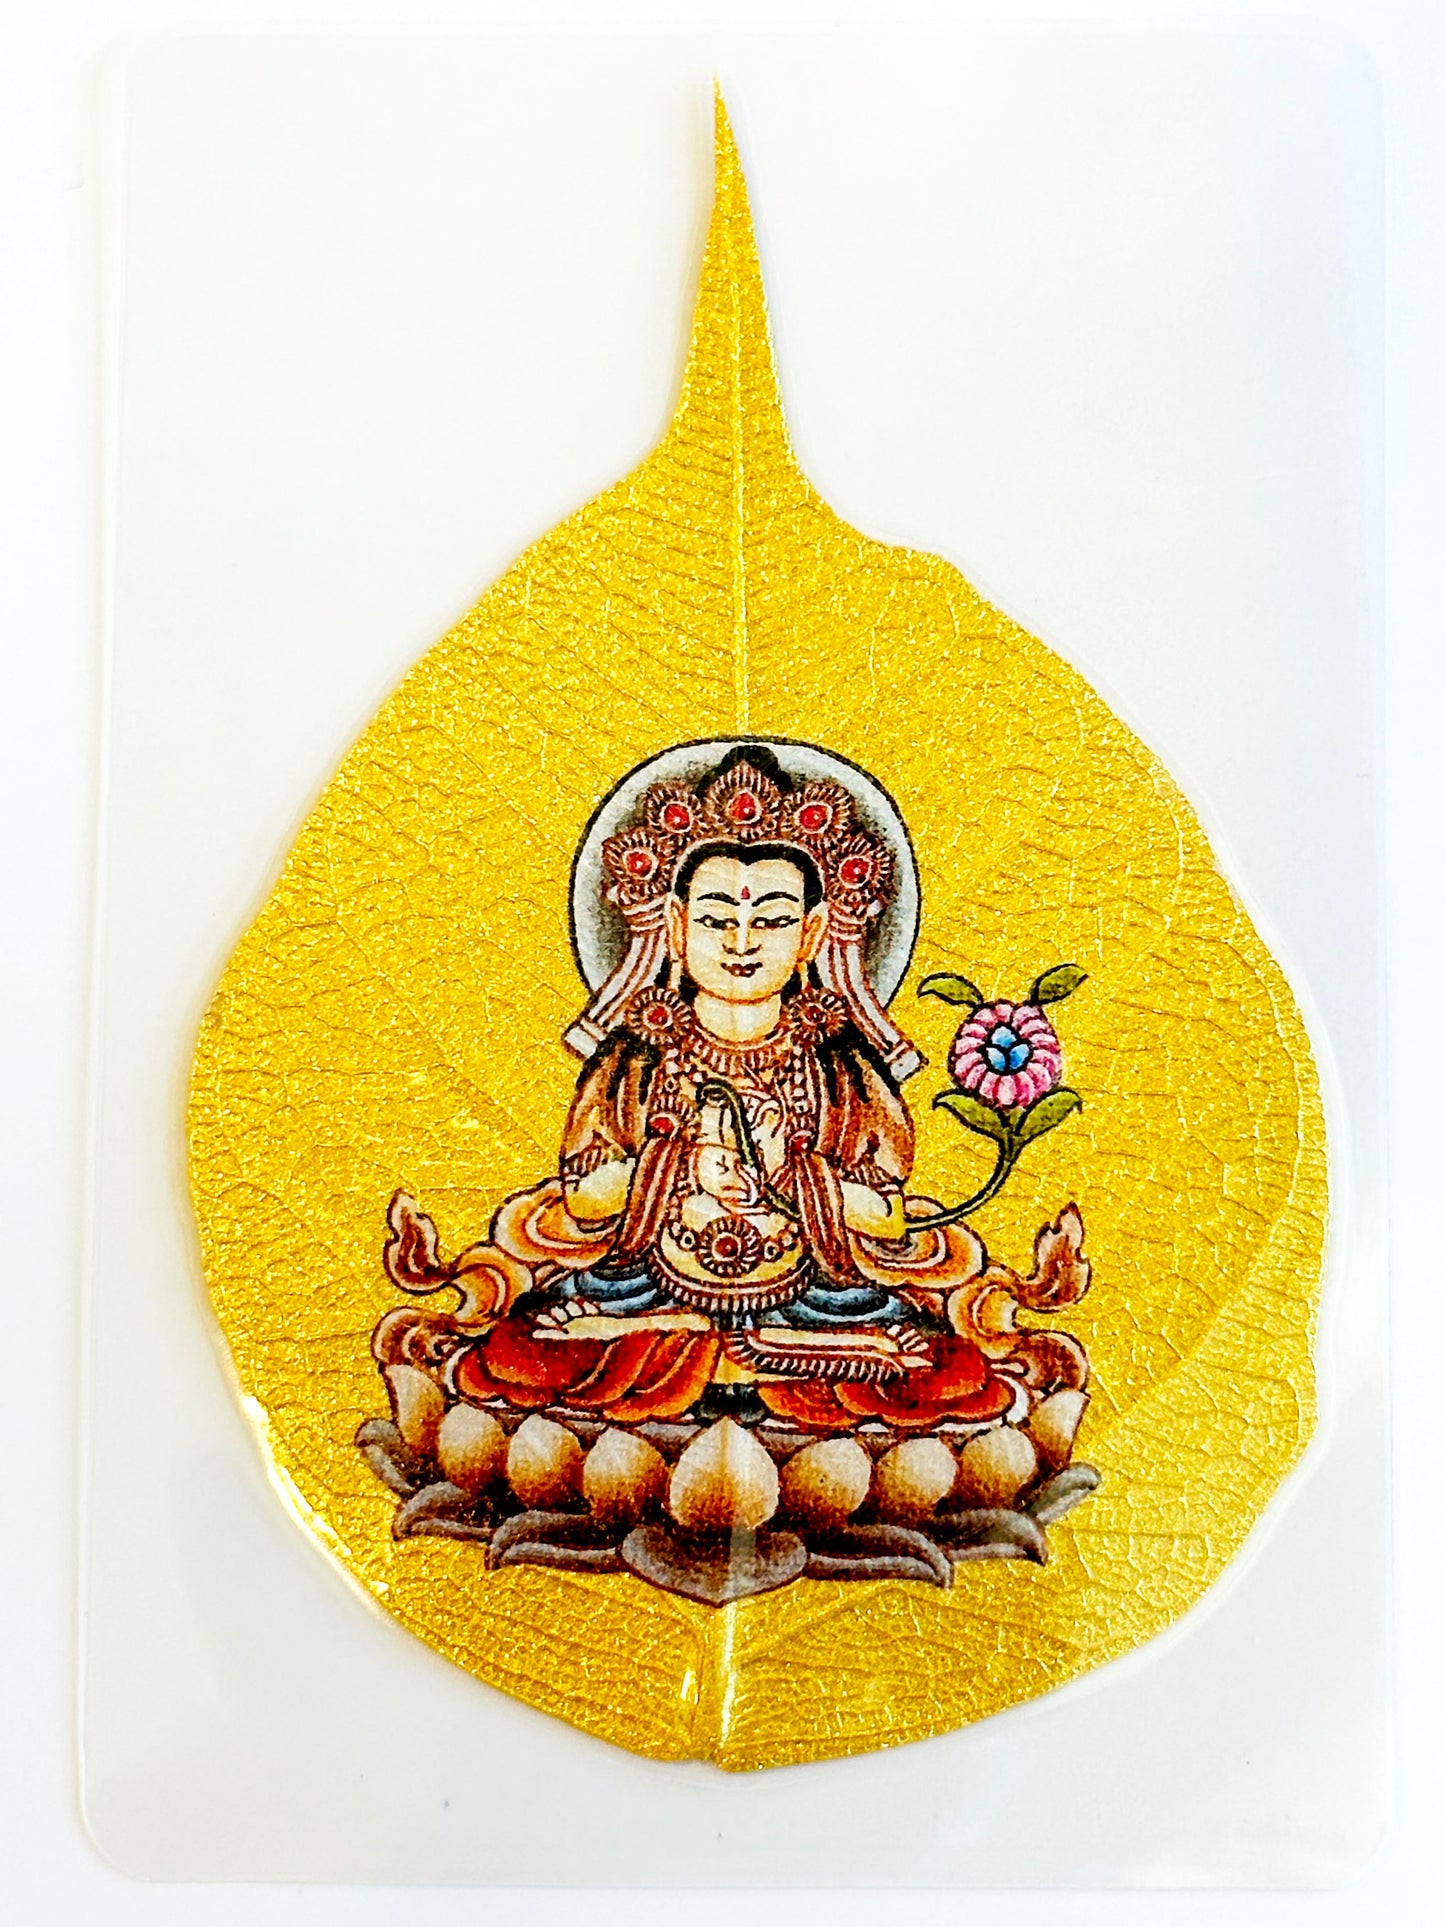 6585 - Golden Bodhi Leaf - Mahasthamaprata Buddha - Bodhisattva for Horse